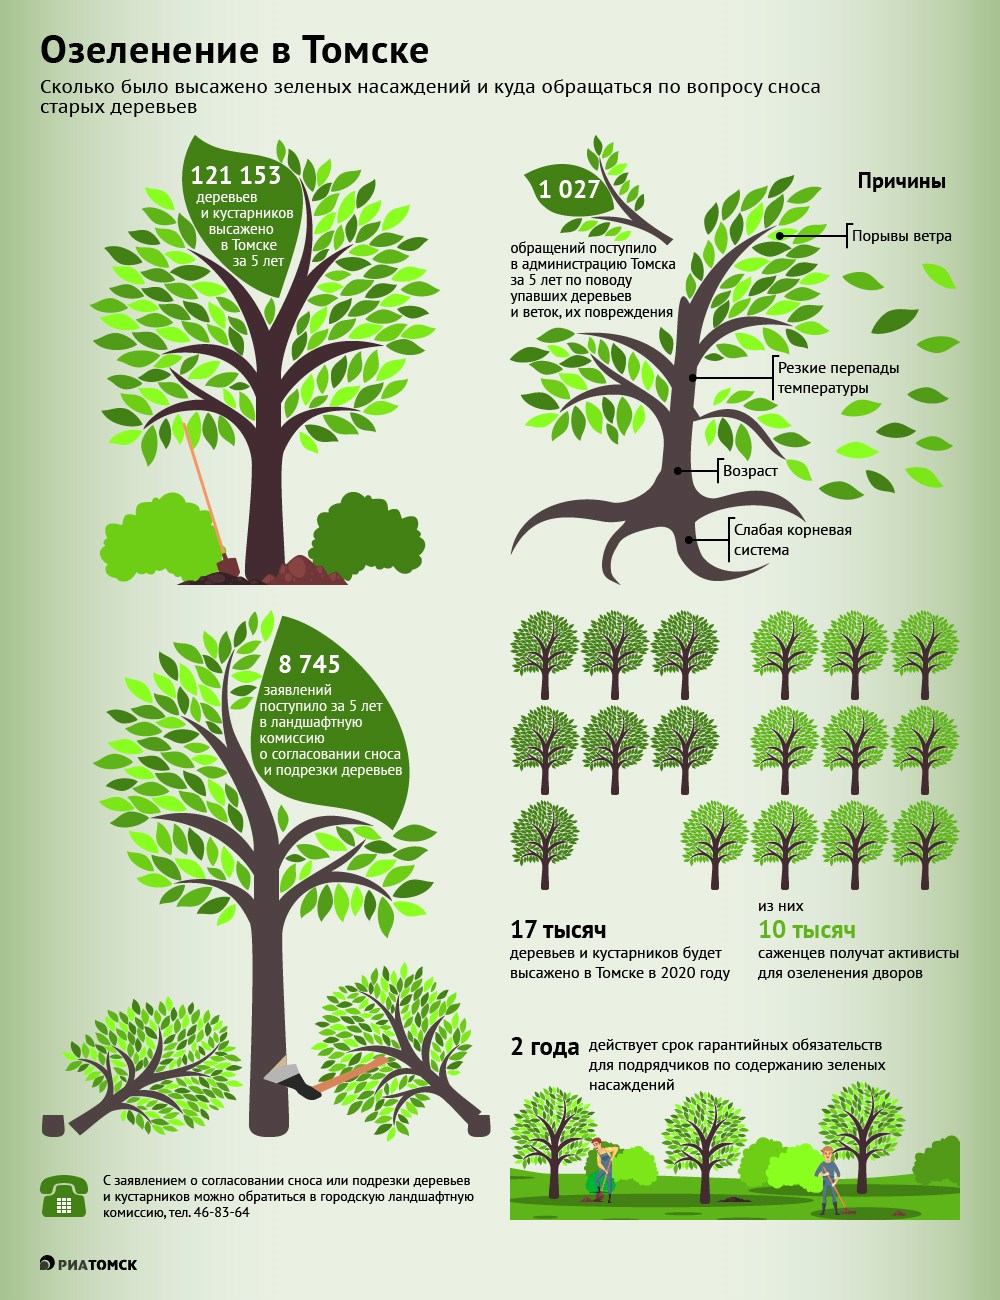 Семнадцать тысяч деревьев и кустарников планируется высадить в Томске в 2020 году, большую часть саженцев – 10 тысяч –  получат активисты для озеленения дворов. Подробнее - в инфографике РИА Томск.